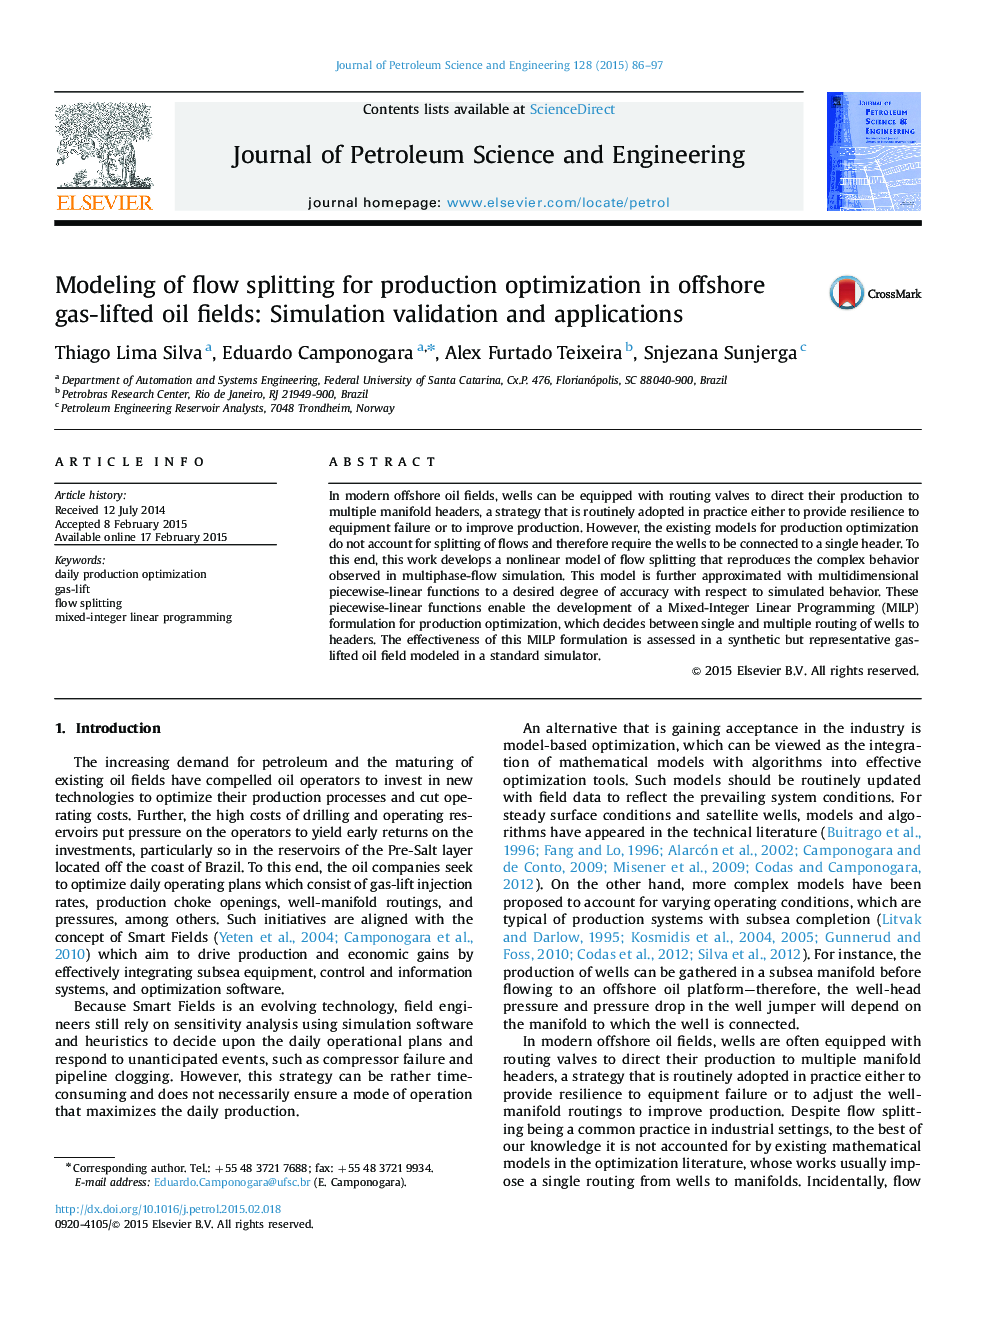 مدل سازی تقسیم جریان برای بهینه سازی تولید در میدانهای نفتی دریایی دریایی: اعتبار سنجی و برنامه های کاربردی 